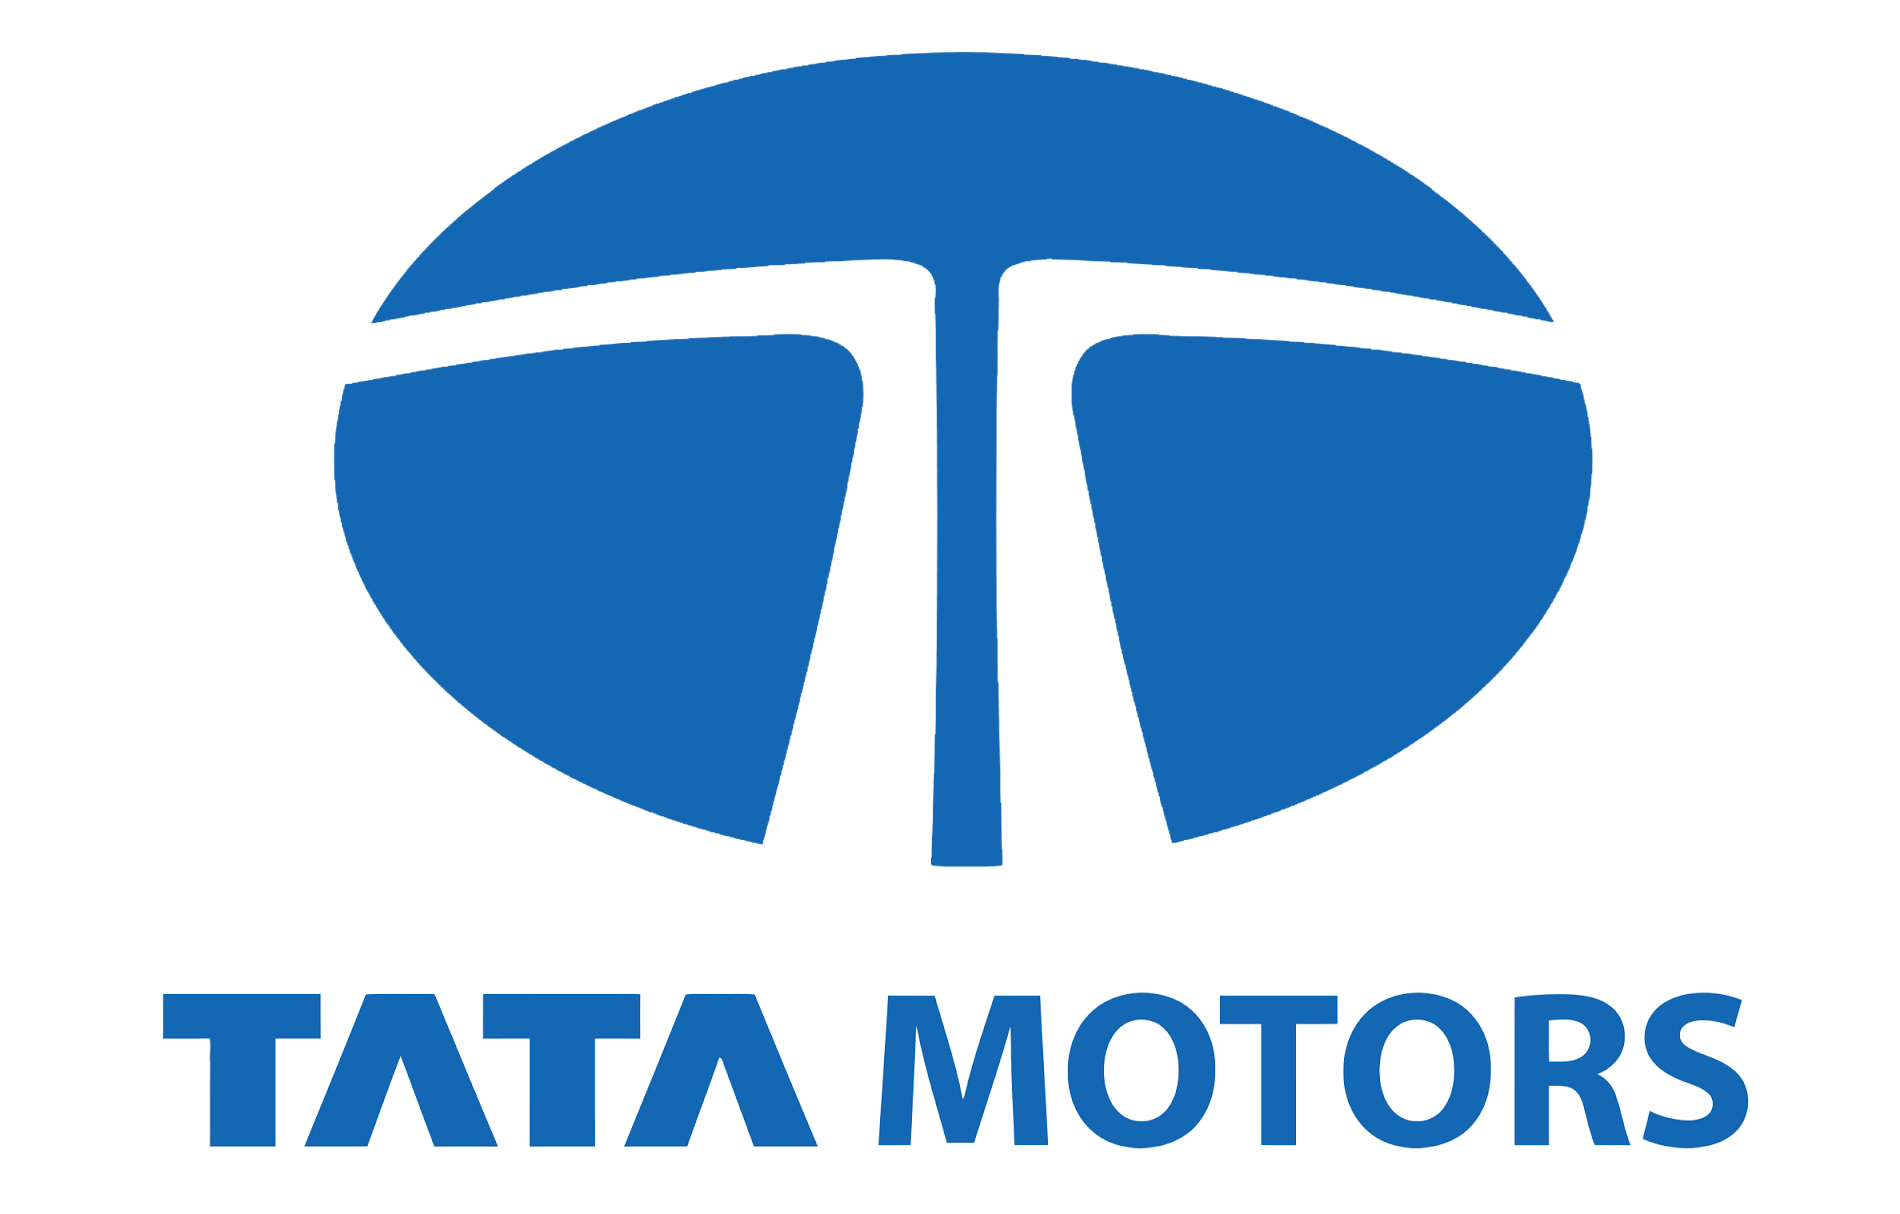 Tata Motors Cars Showroom - RKL Motors|Show Room|Automotive